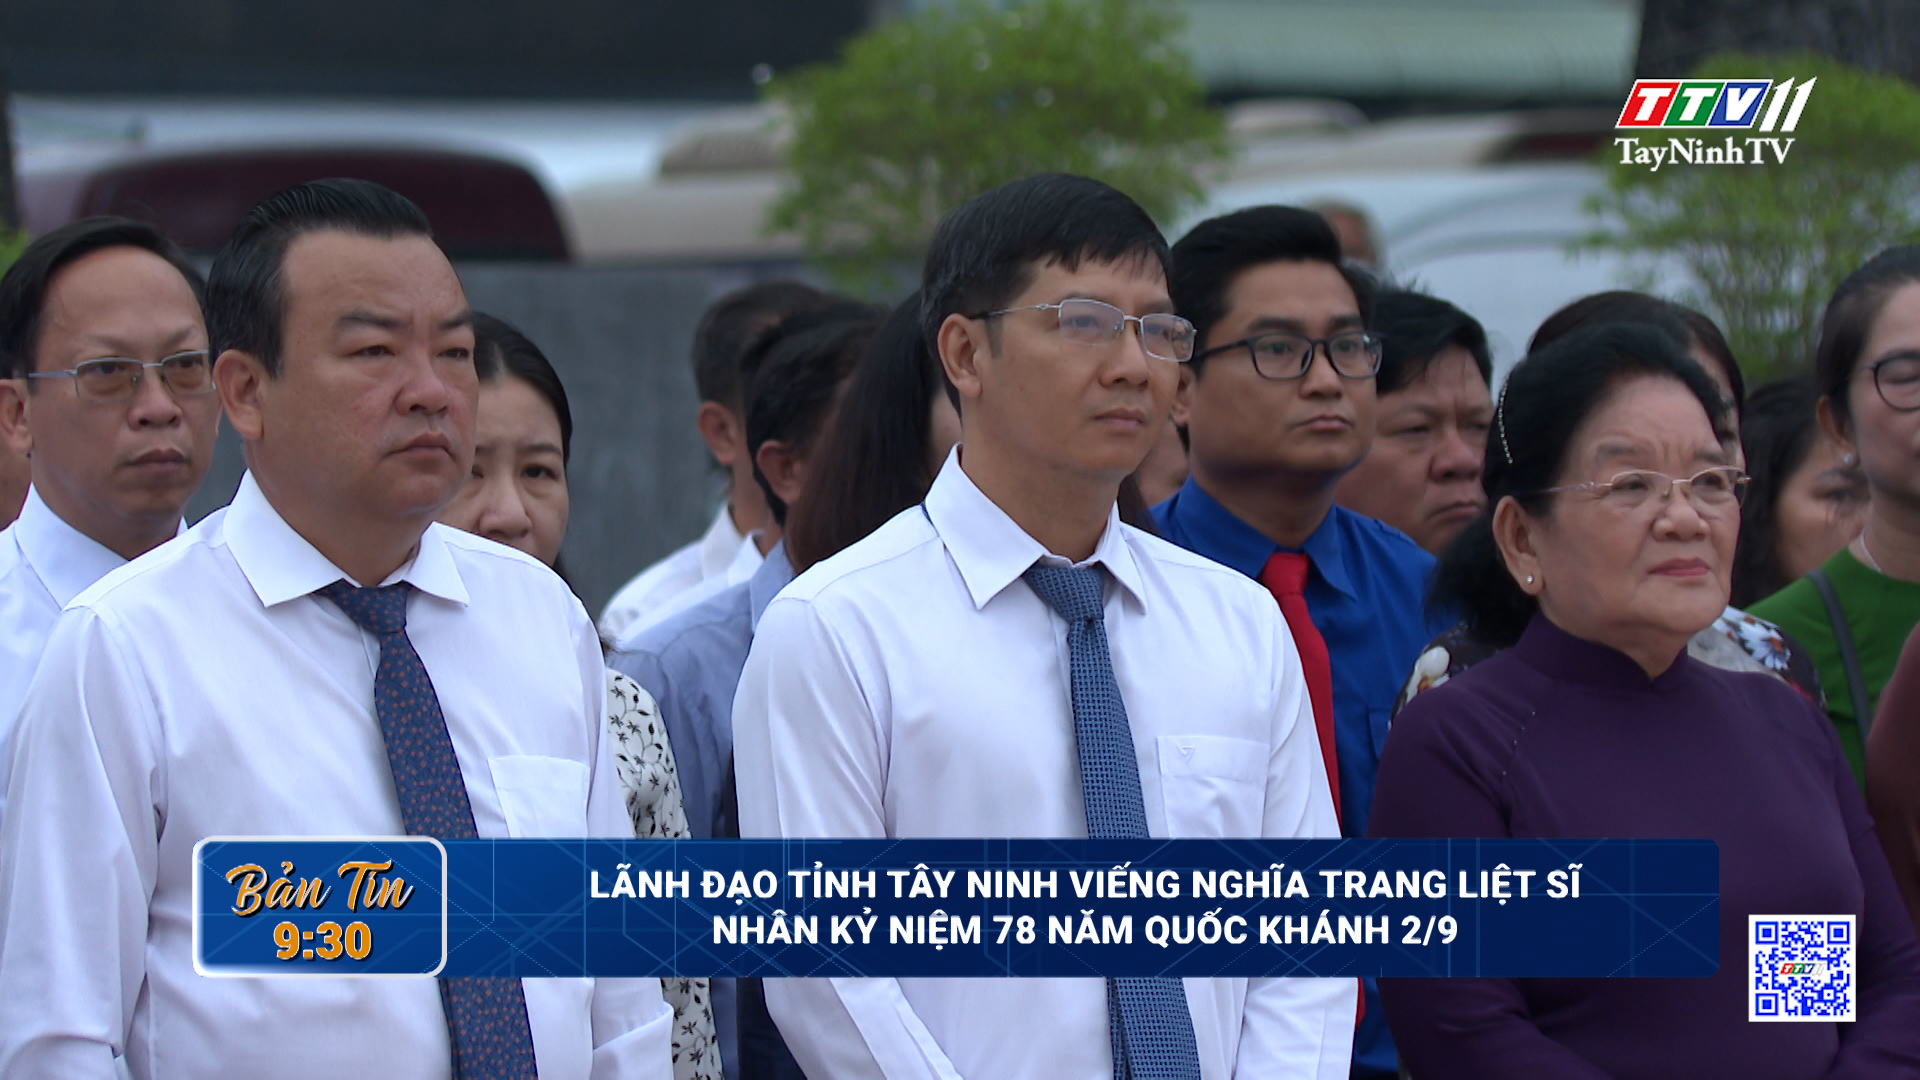 Lãnh đạo tỉnh Tây Ninh viếng nghĩa trang liệt sĩ nhân kỷ niệm 78 năm Quốc khánh 2/9 | TayNinhTV